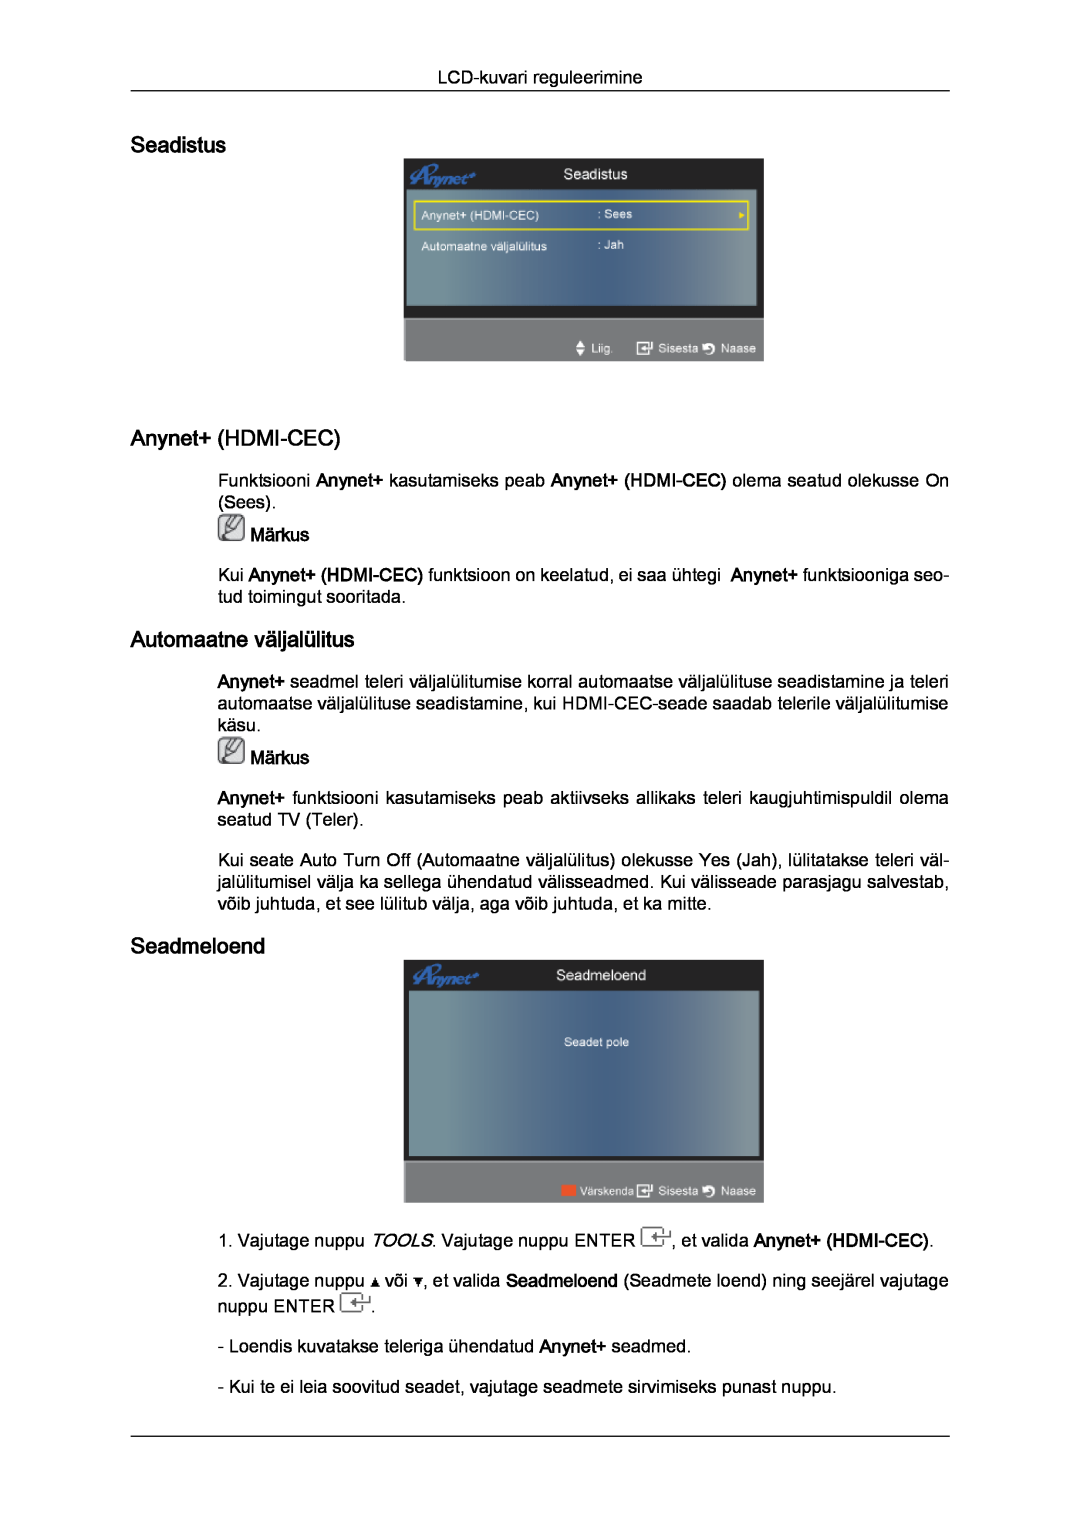 Samsung LS22TDDSUV/EN, LS20TDVSUV/EN manual Seadistus Anynet+ HDMI-CEC, Automaatne väljalülitus, Seadmeloend, Märkus 